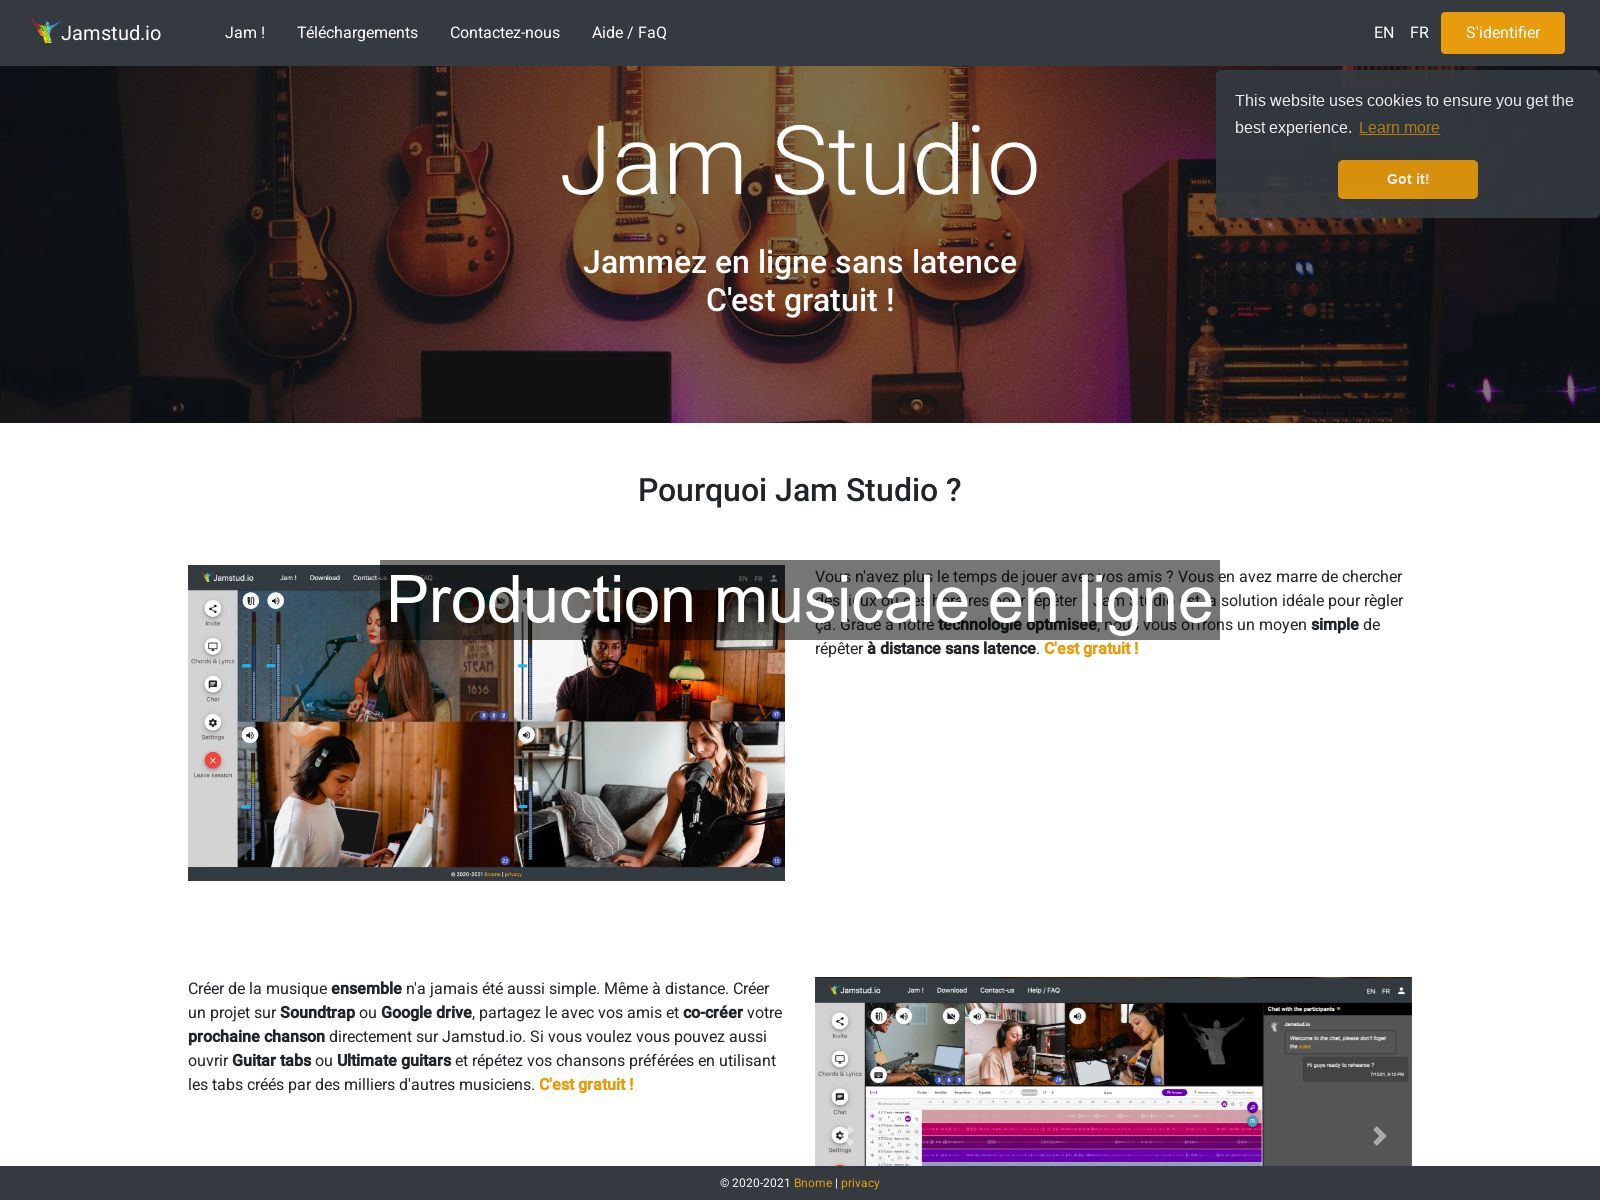 Production musicale en ligne